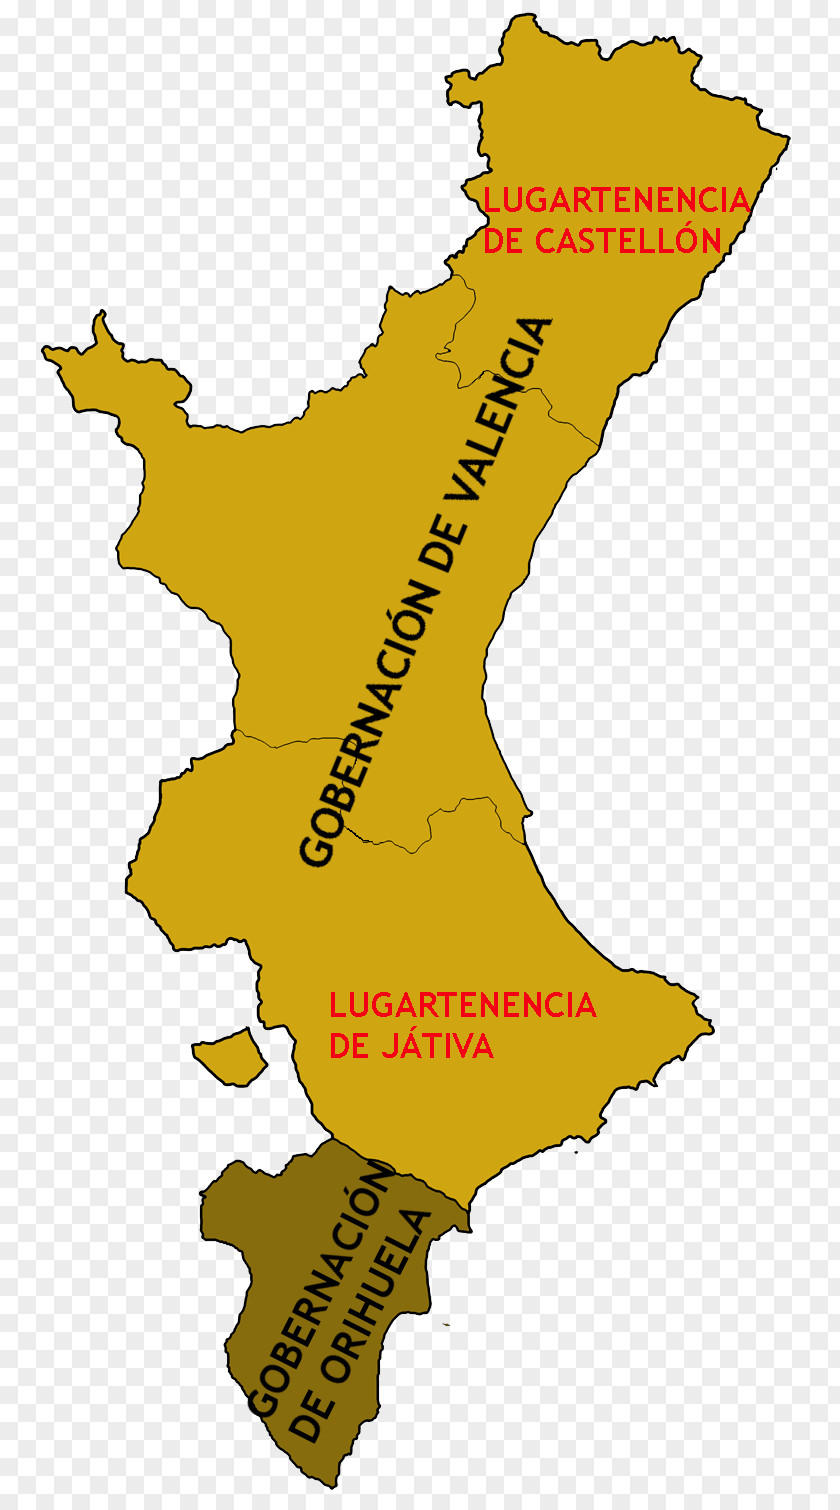 Granero Kingdom Of Valencia Crown Aragon Realm Valencian PNG